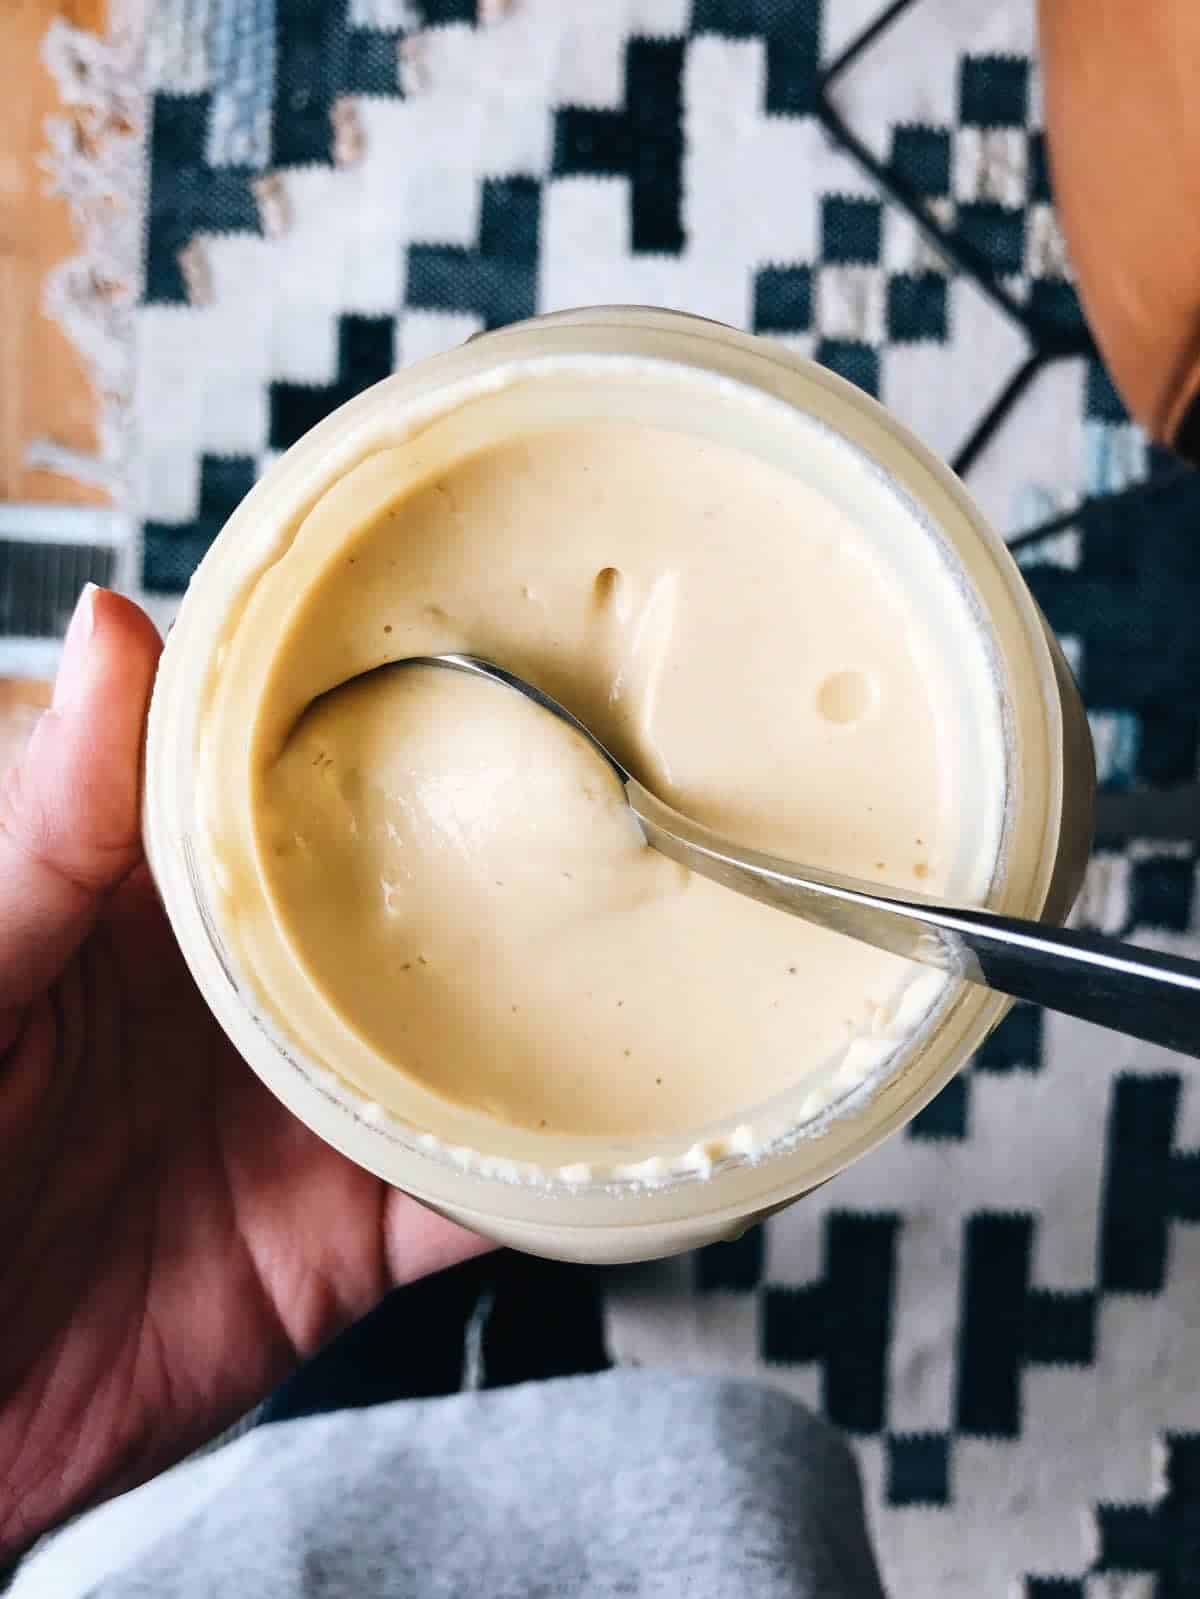 Vegan yogurt in a jar with a spoon.